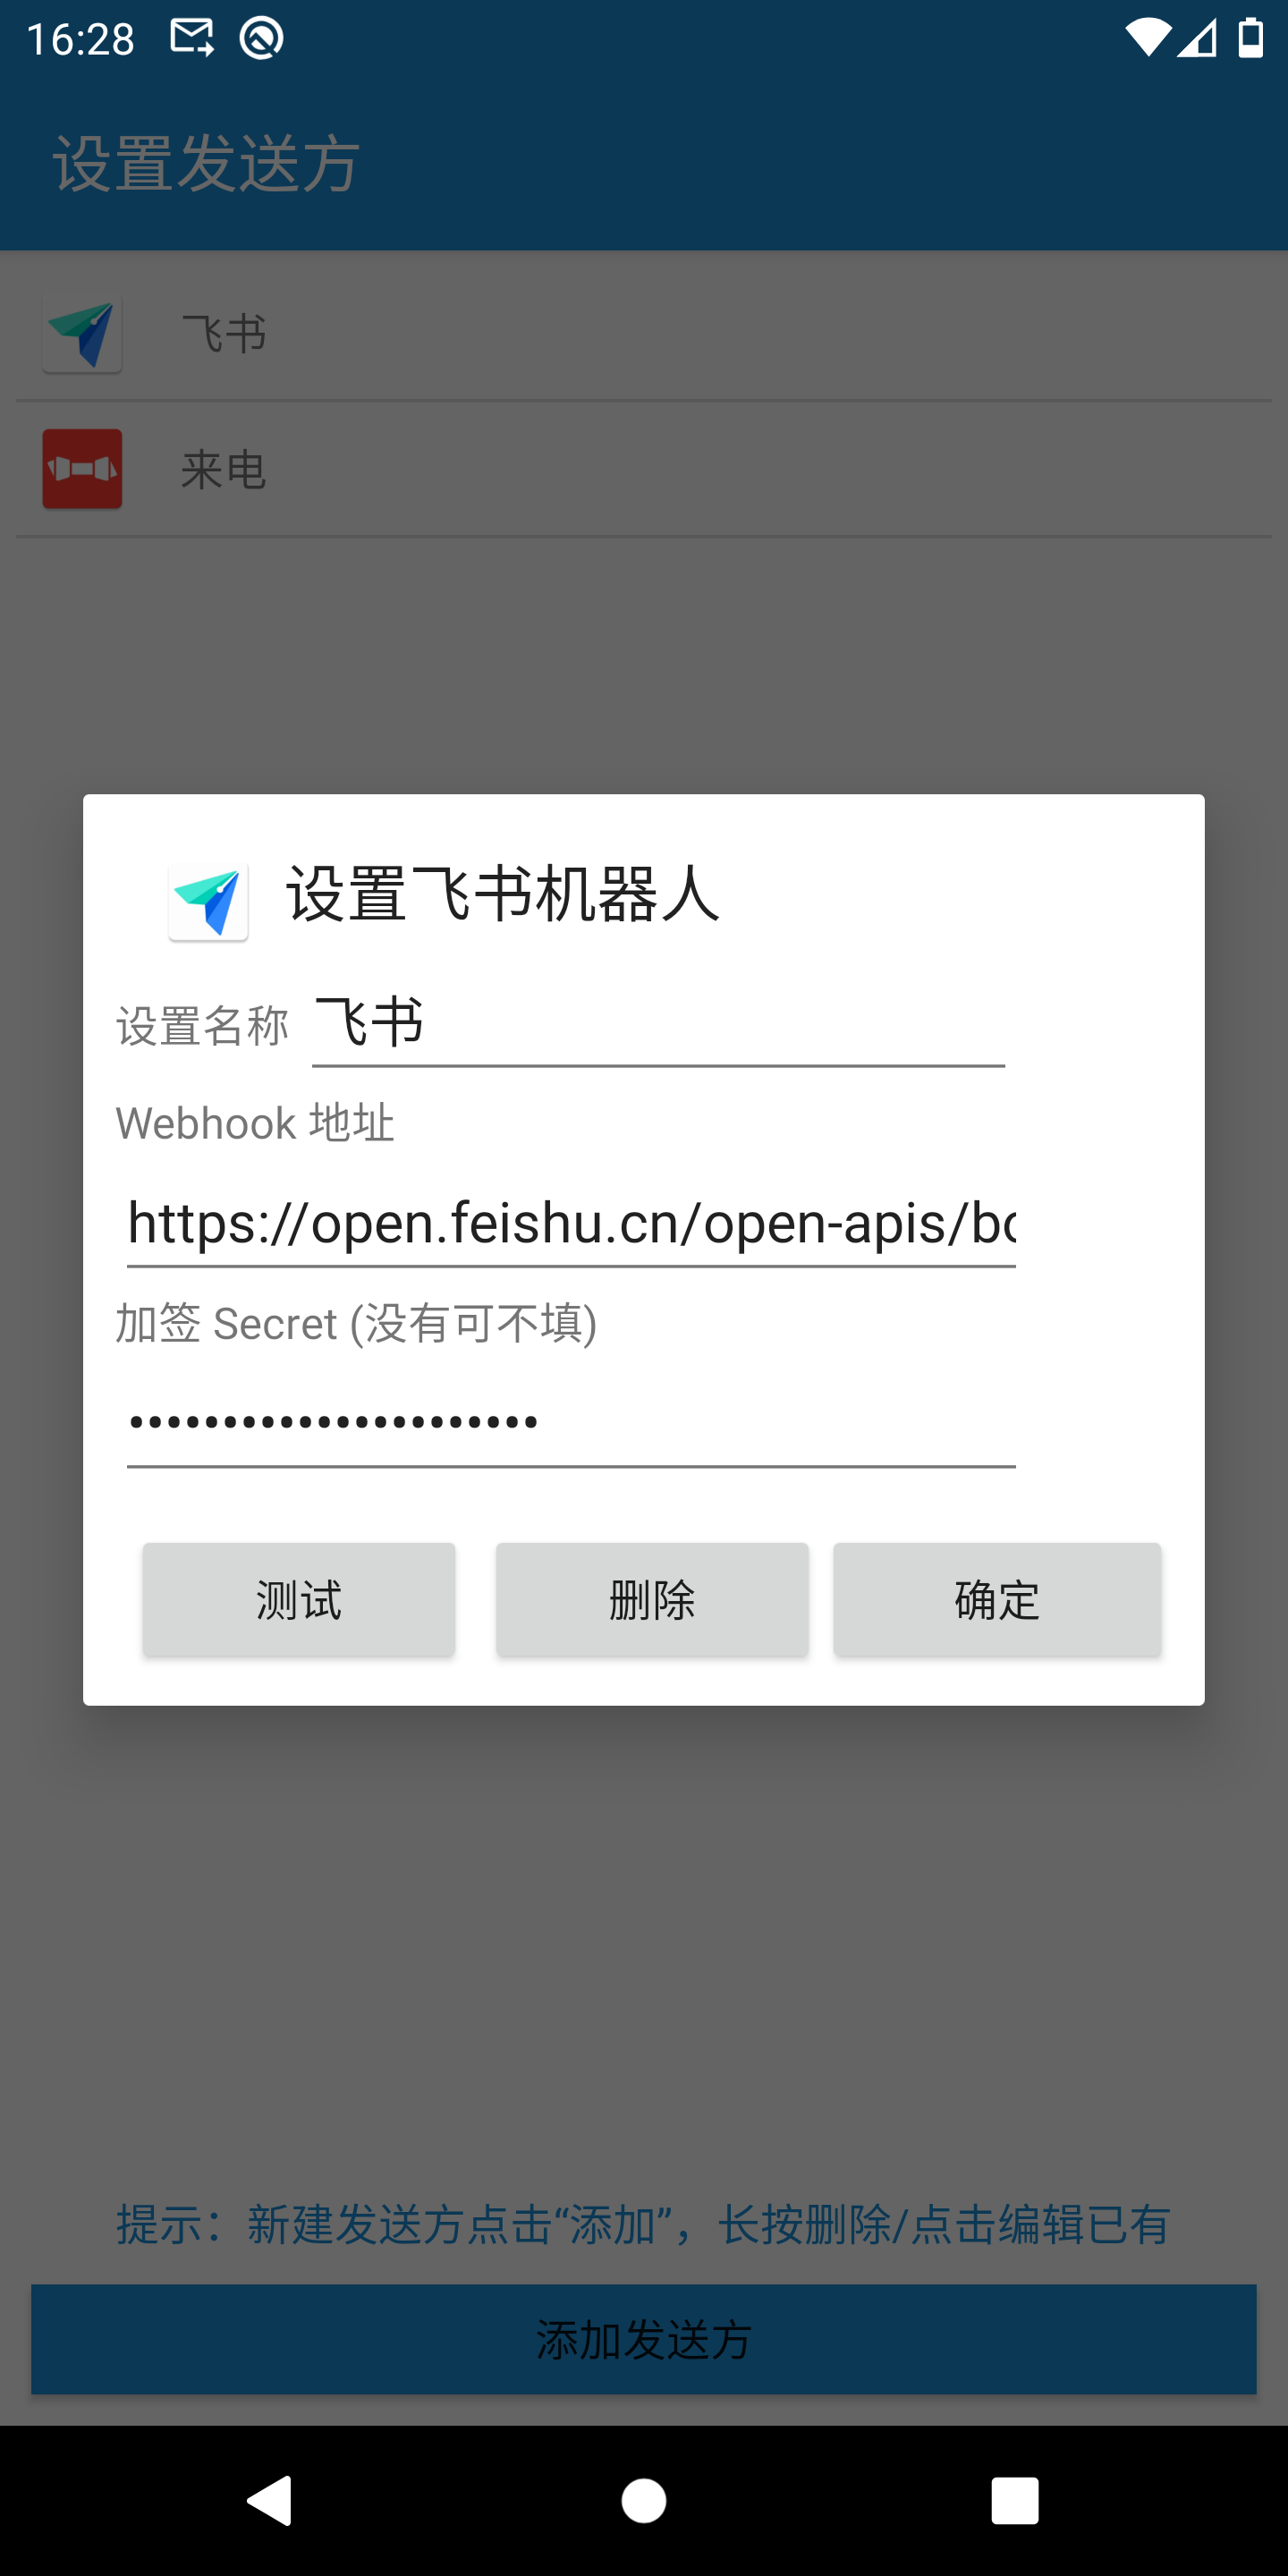 Add/Edit FeiShu sender